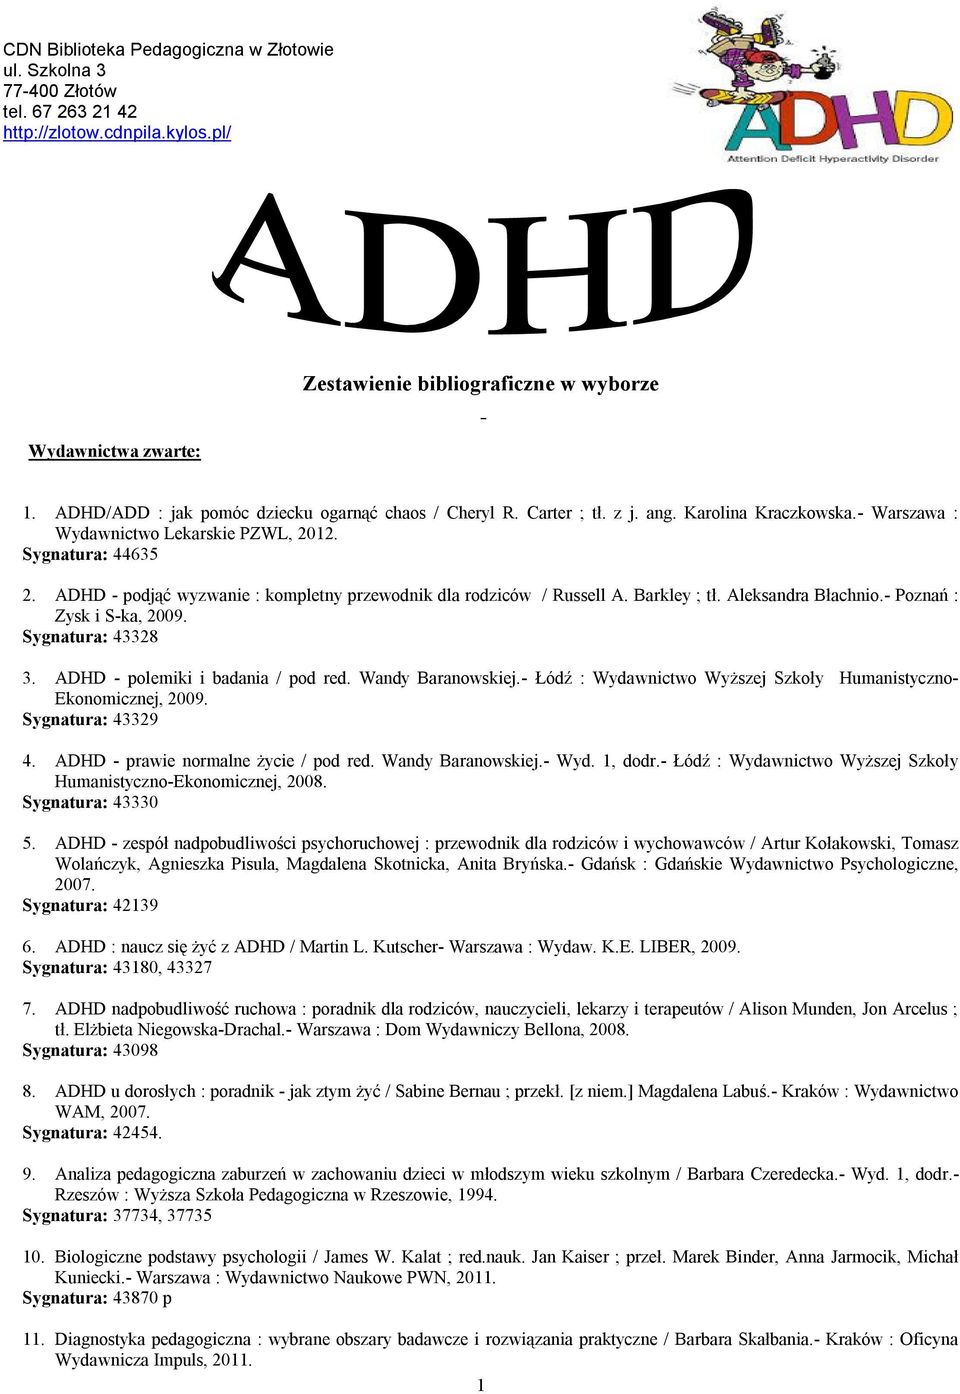 ADHD - podjąć wyzwanie : kompletny przewodnik dla rodziców / Russell A. Barkley ; tł. Aleksandra Błachnio.- Poznań : Zysk i S-ka, 2009. Sygnatura: 43328 3. ADHD - polemiki i badania / pod red.